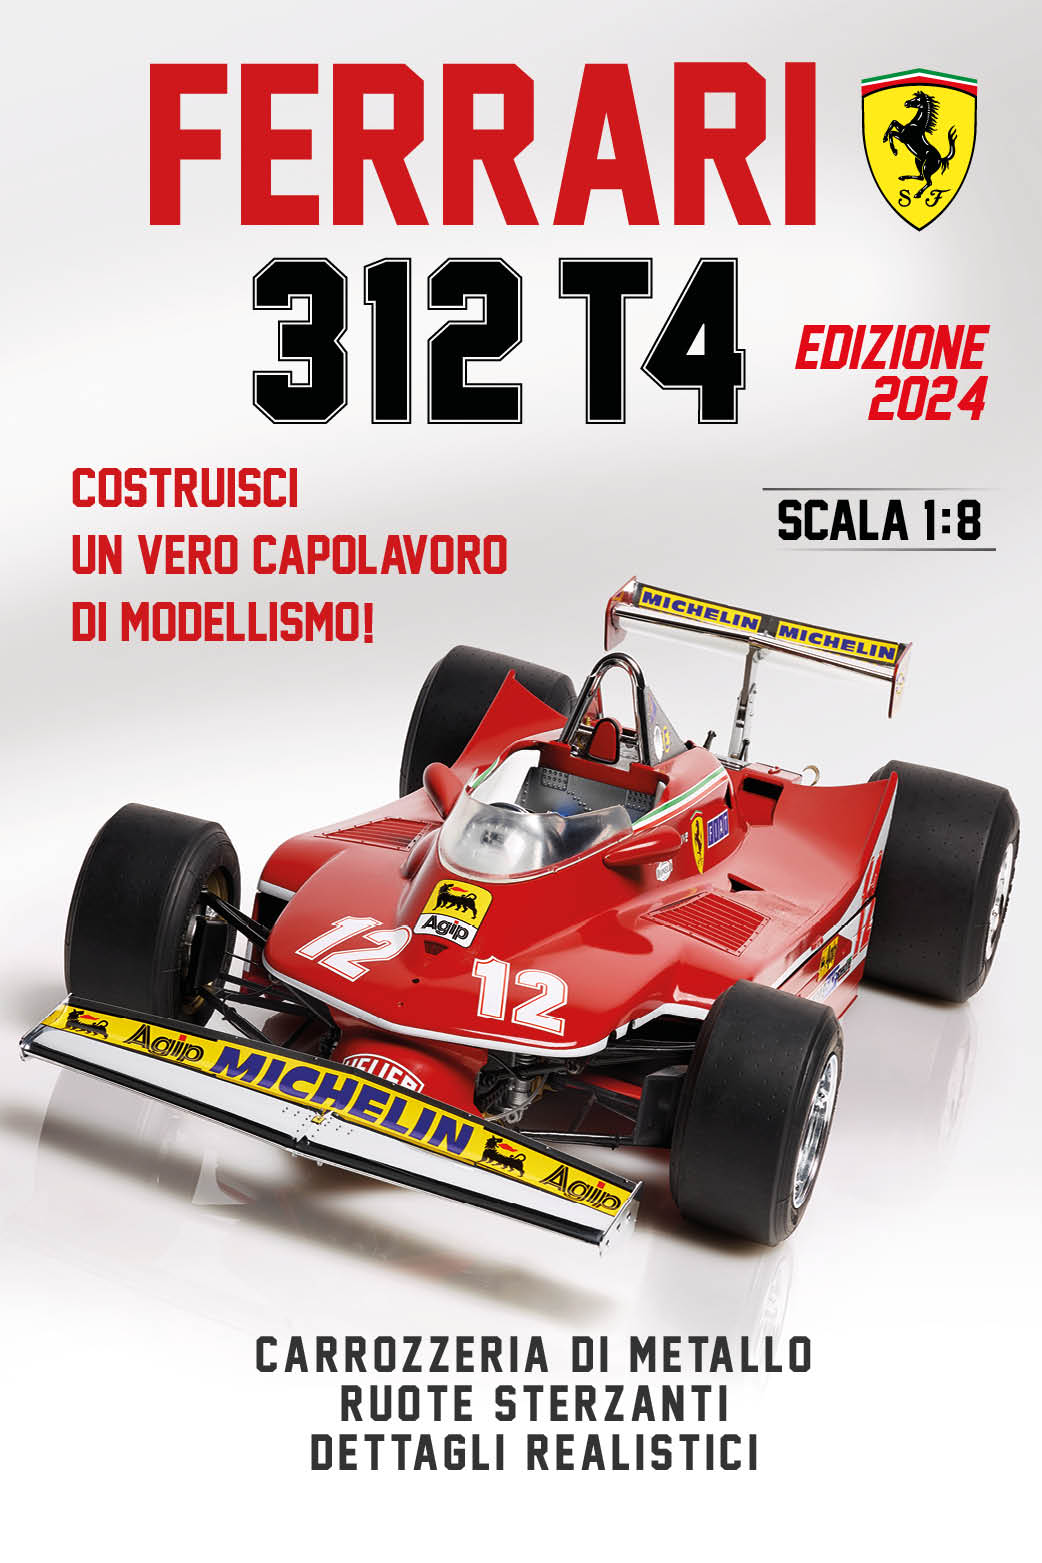 Voiture Ferrari F1-75 R/C 1:12 MONDO MOTORS